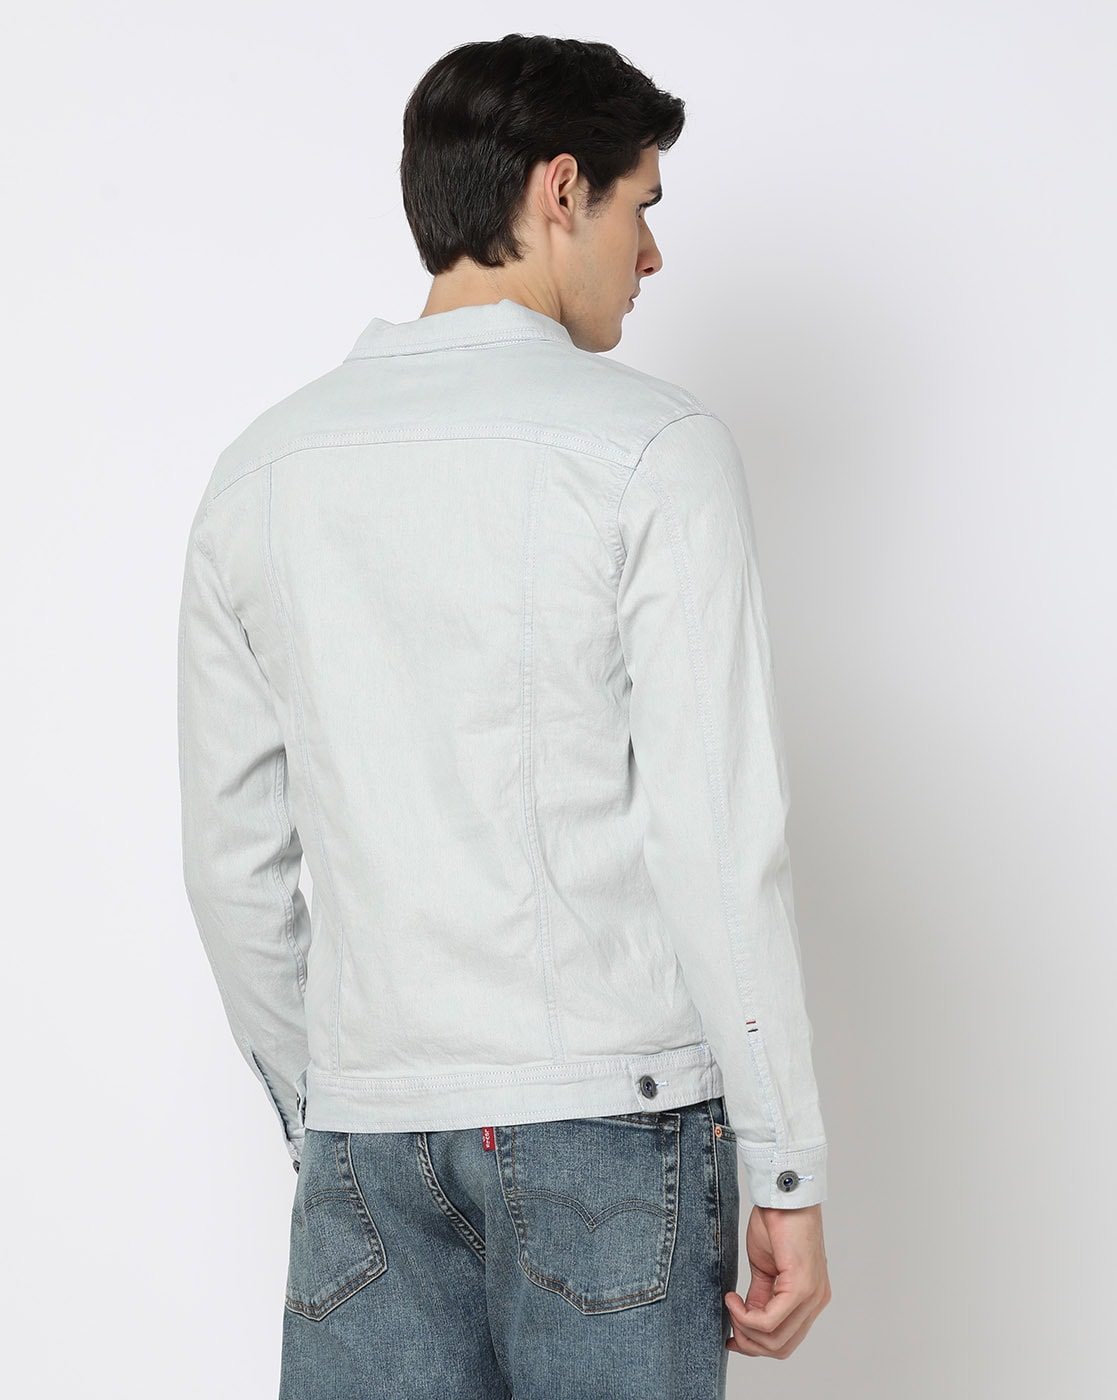 Off-White Denim Jackets for Men | MR PORTER